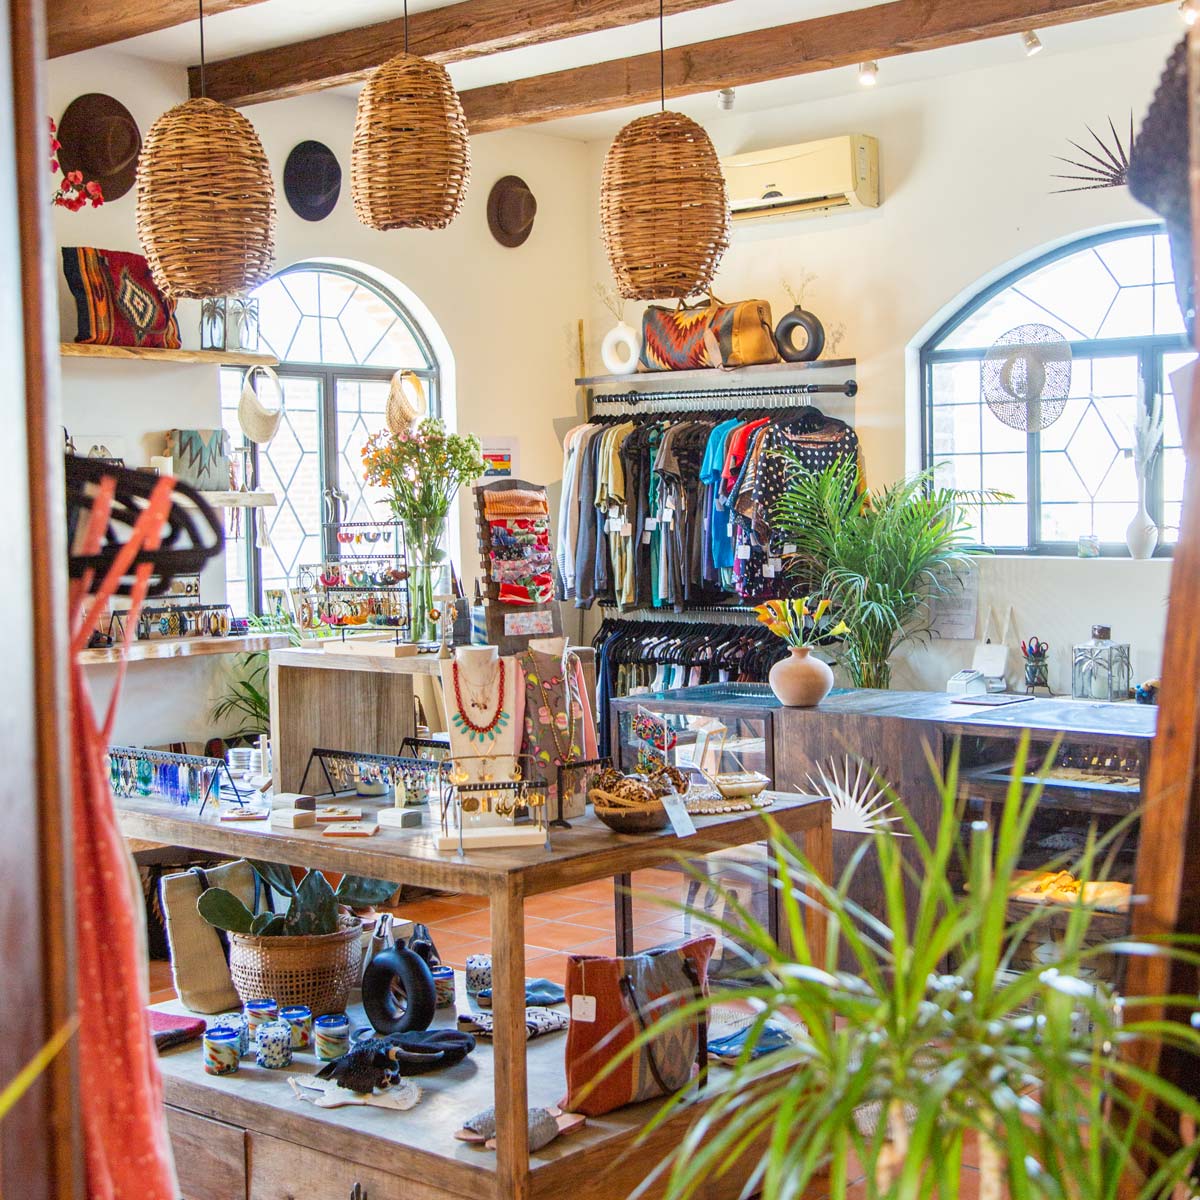 Todos Santos interior photos of the shop ethical clothing shop, Zócalo, based in Baja California Sur. 